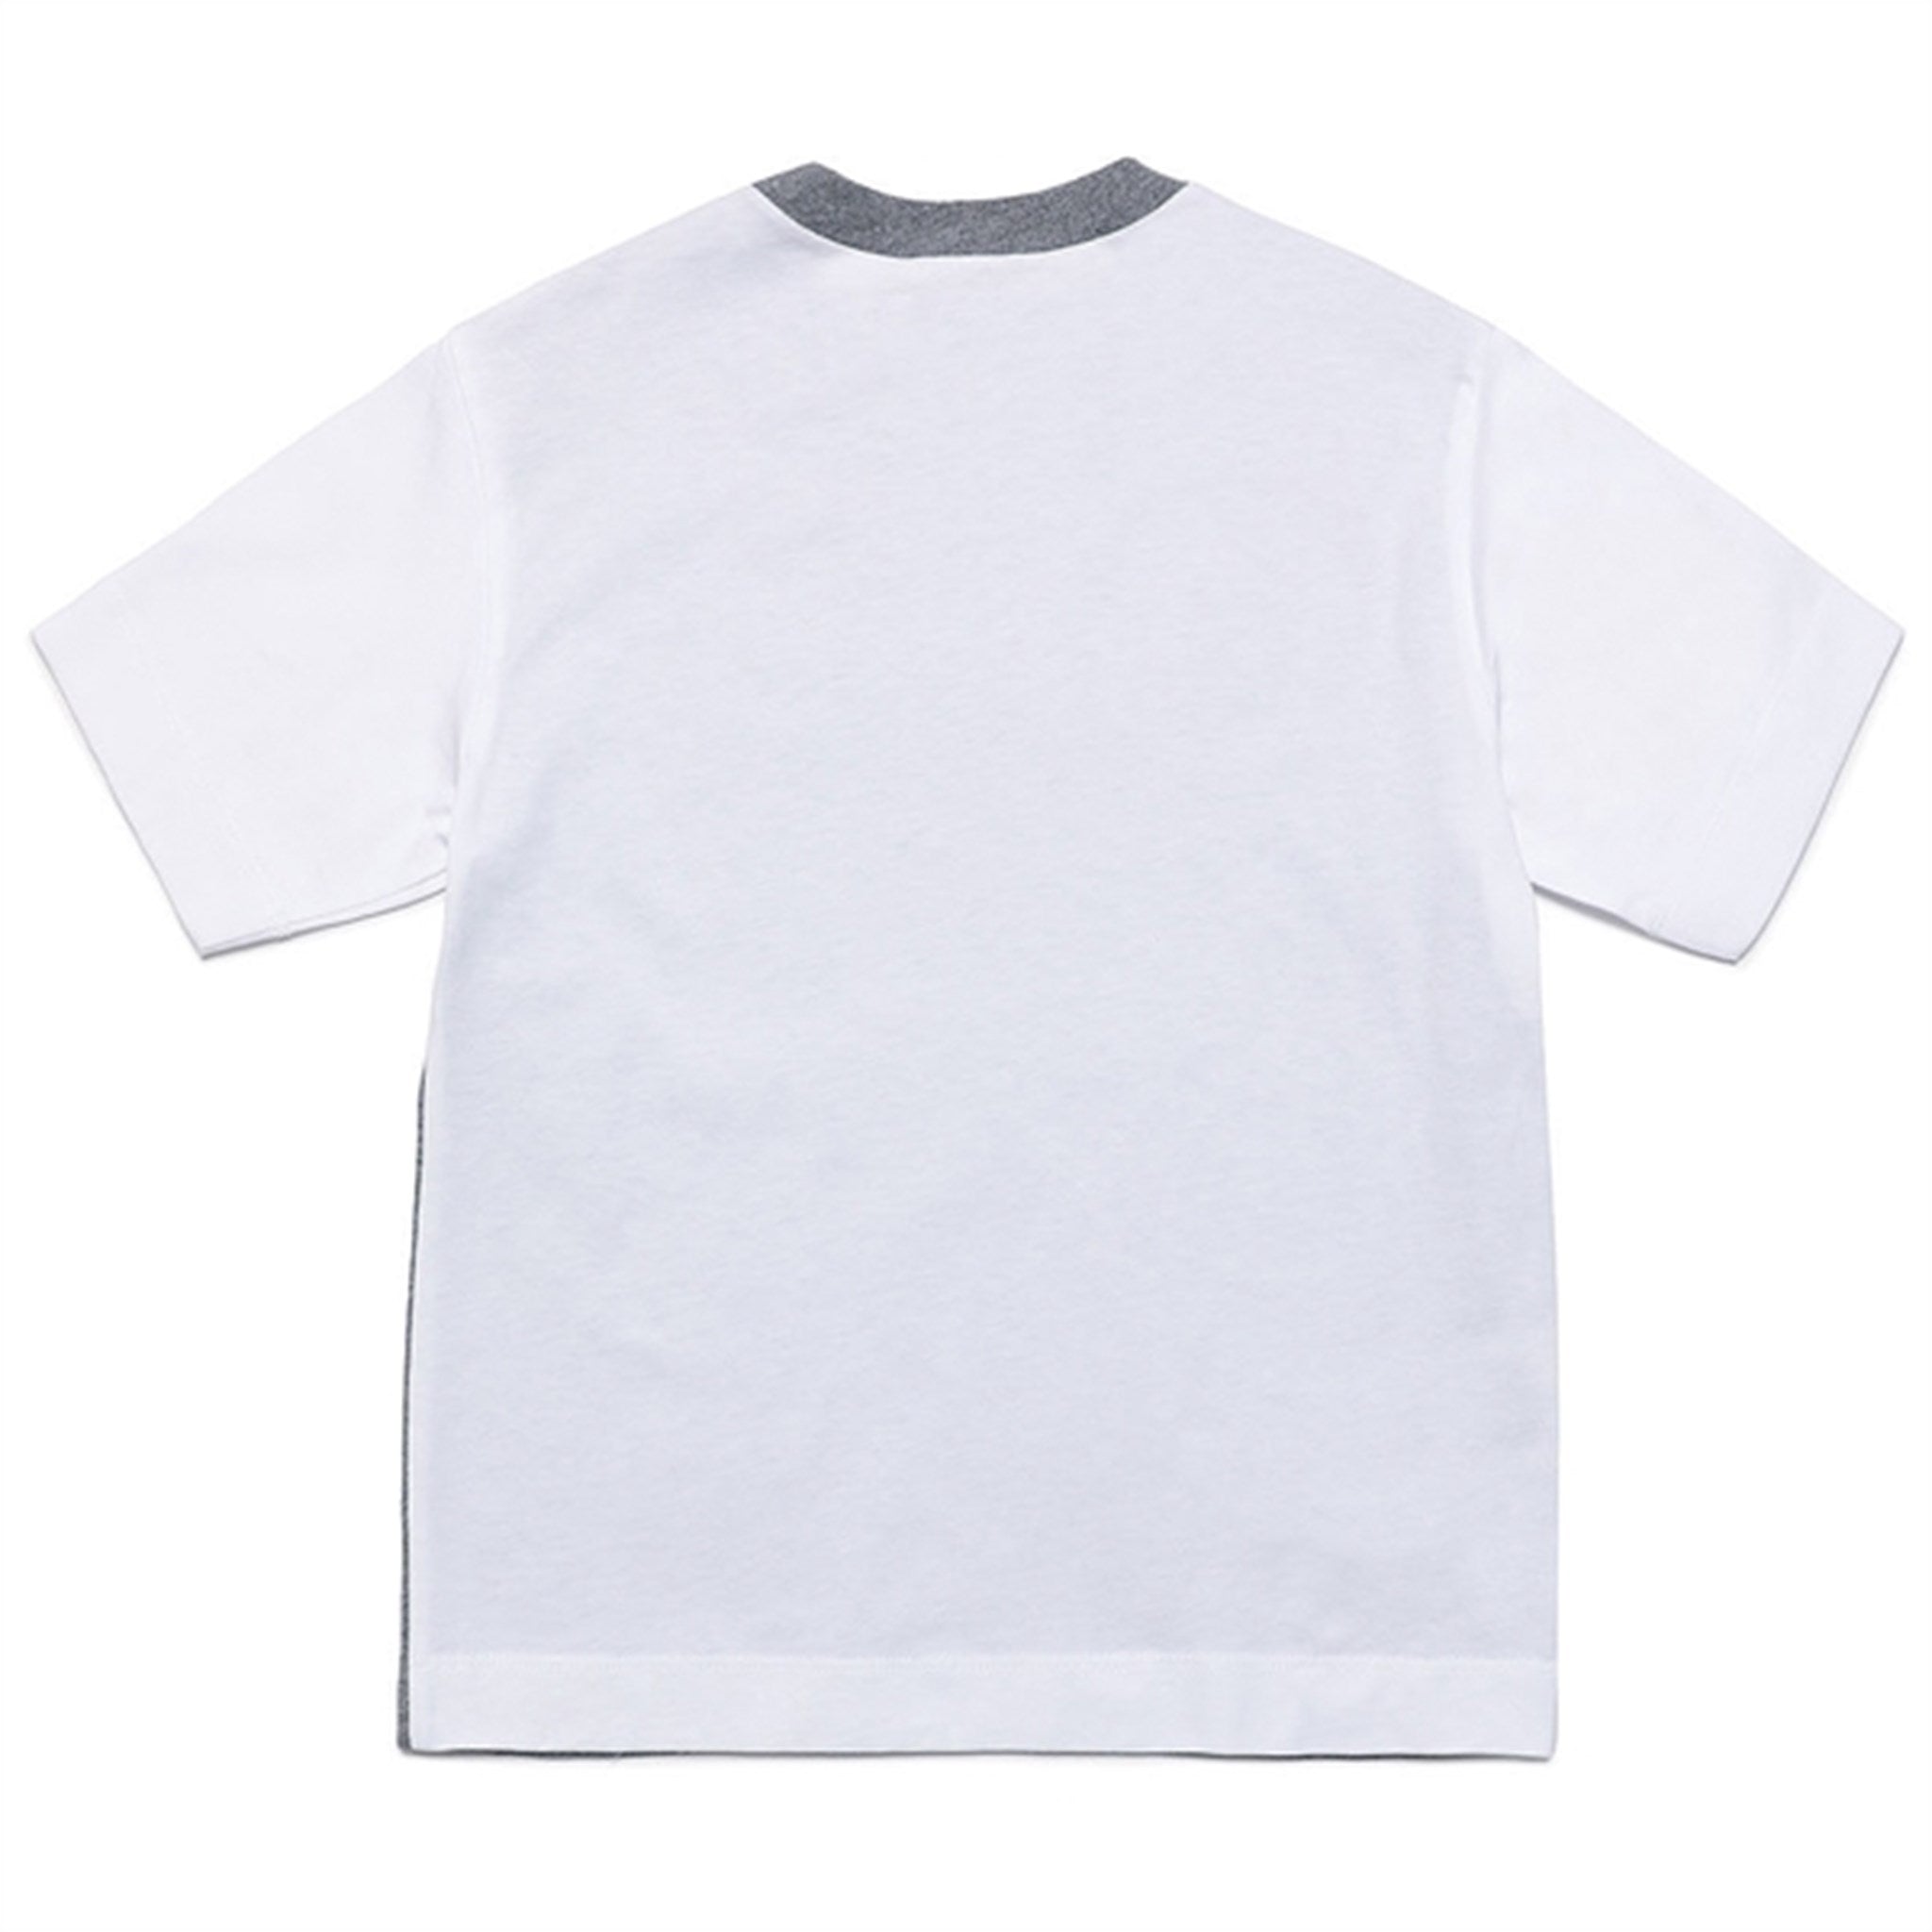 Marni Medium Gray T-shirt 2